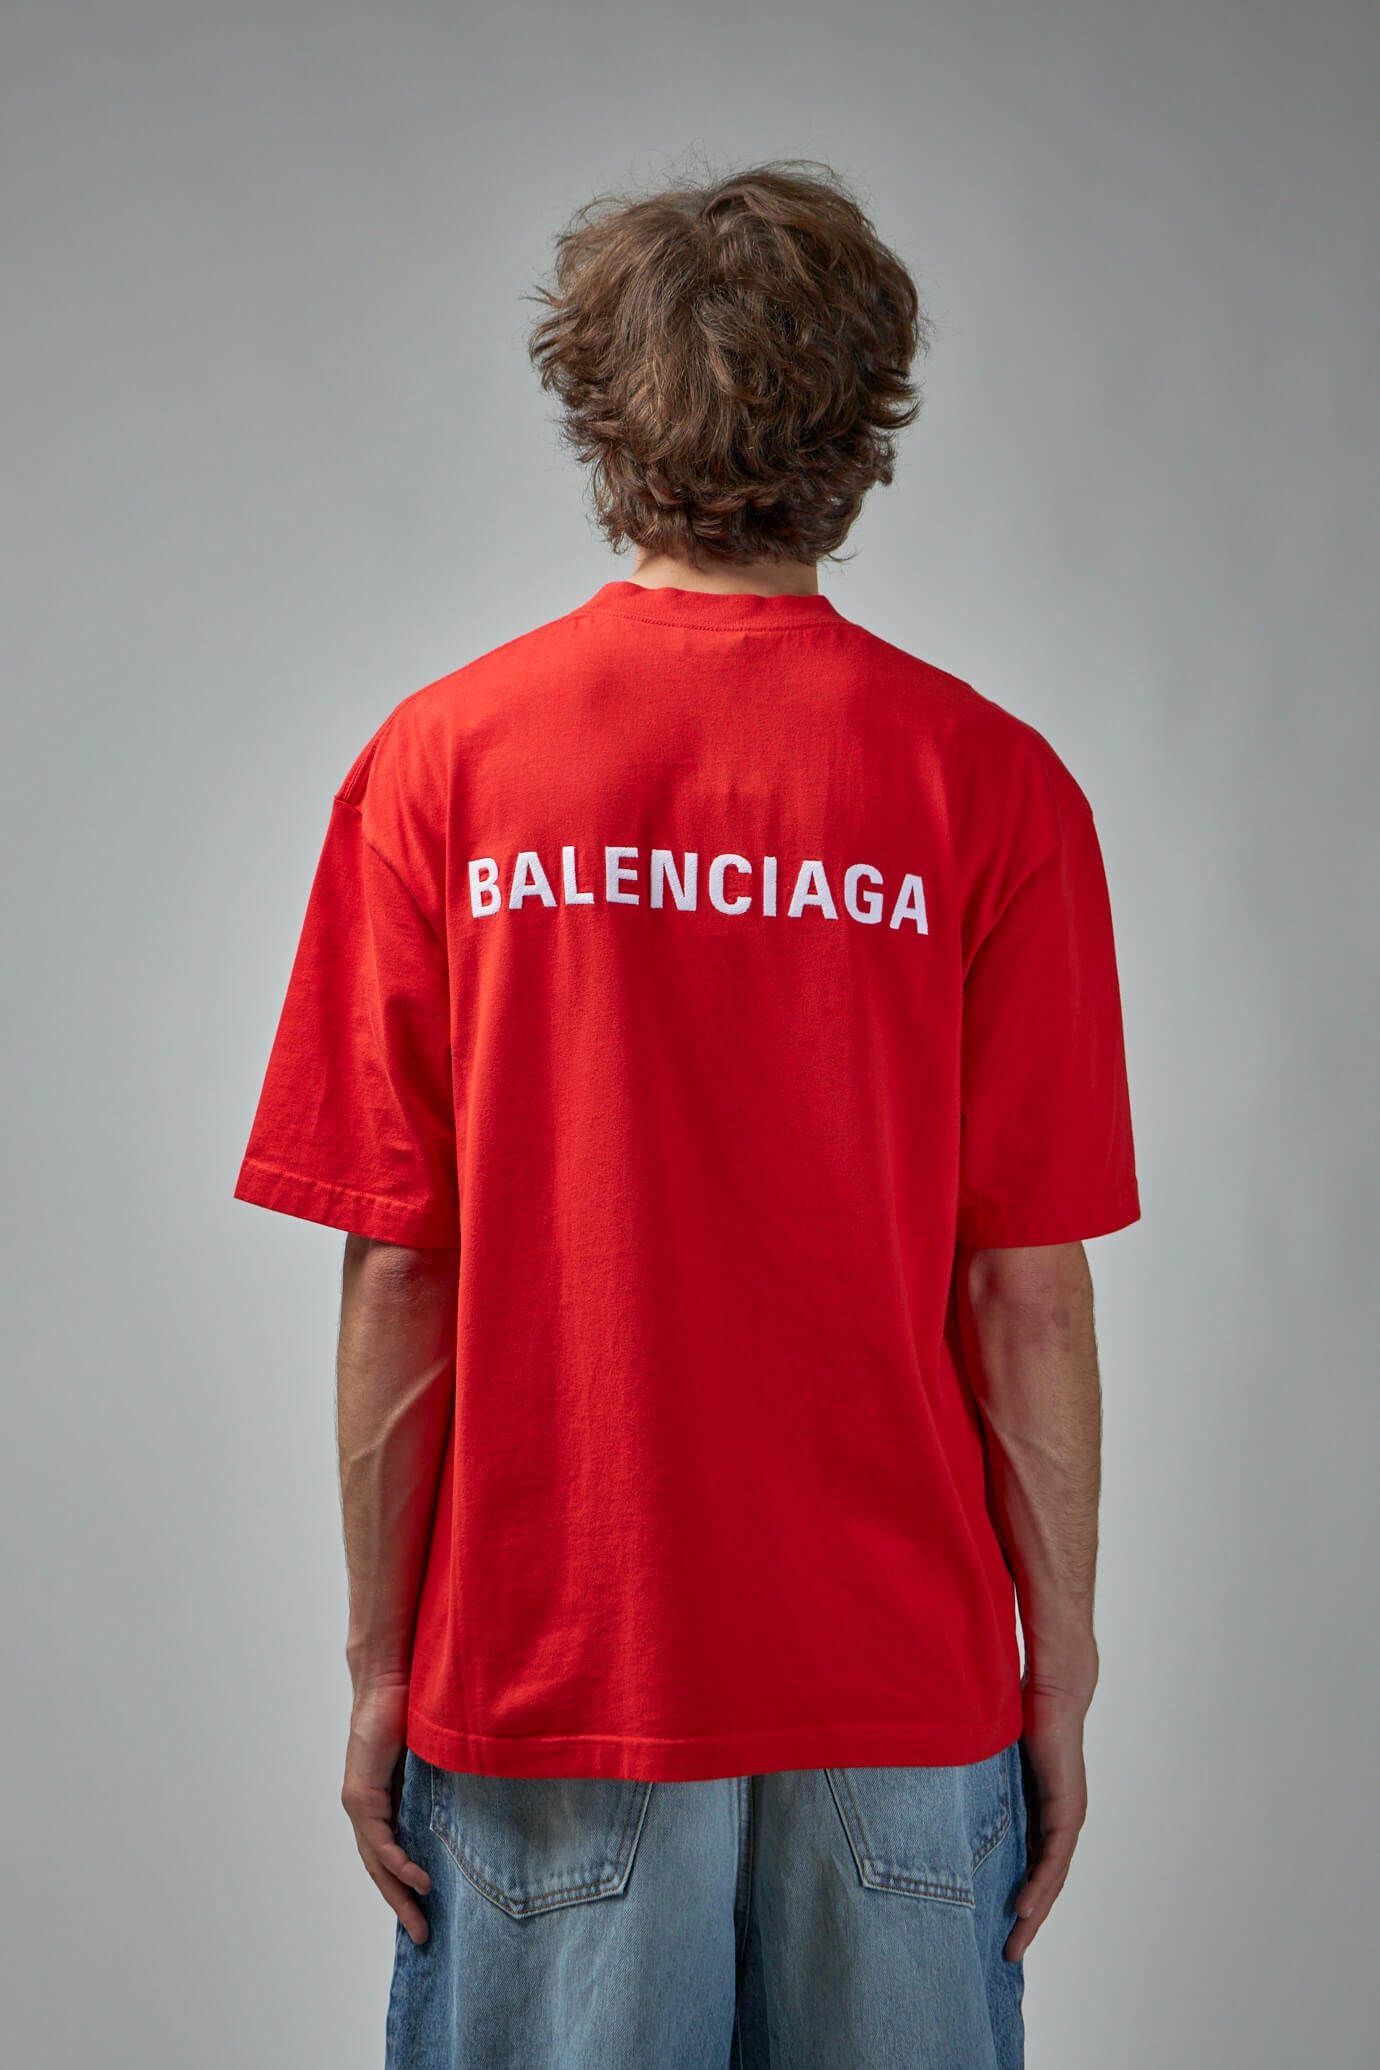 Balenciaga embroidery logo T-shirt